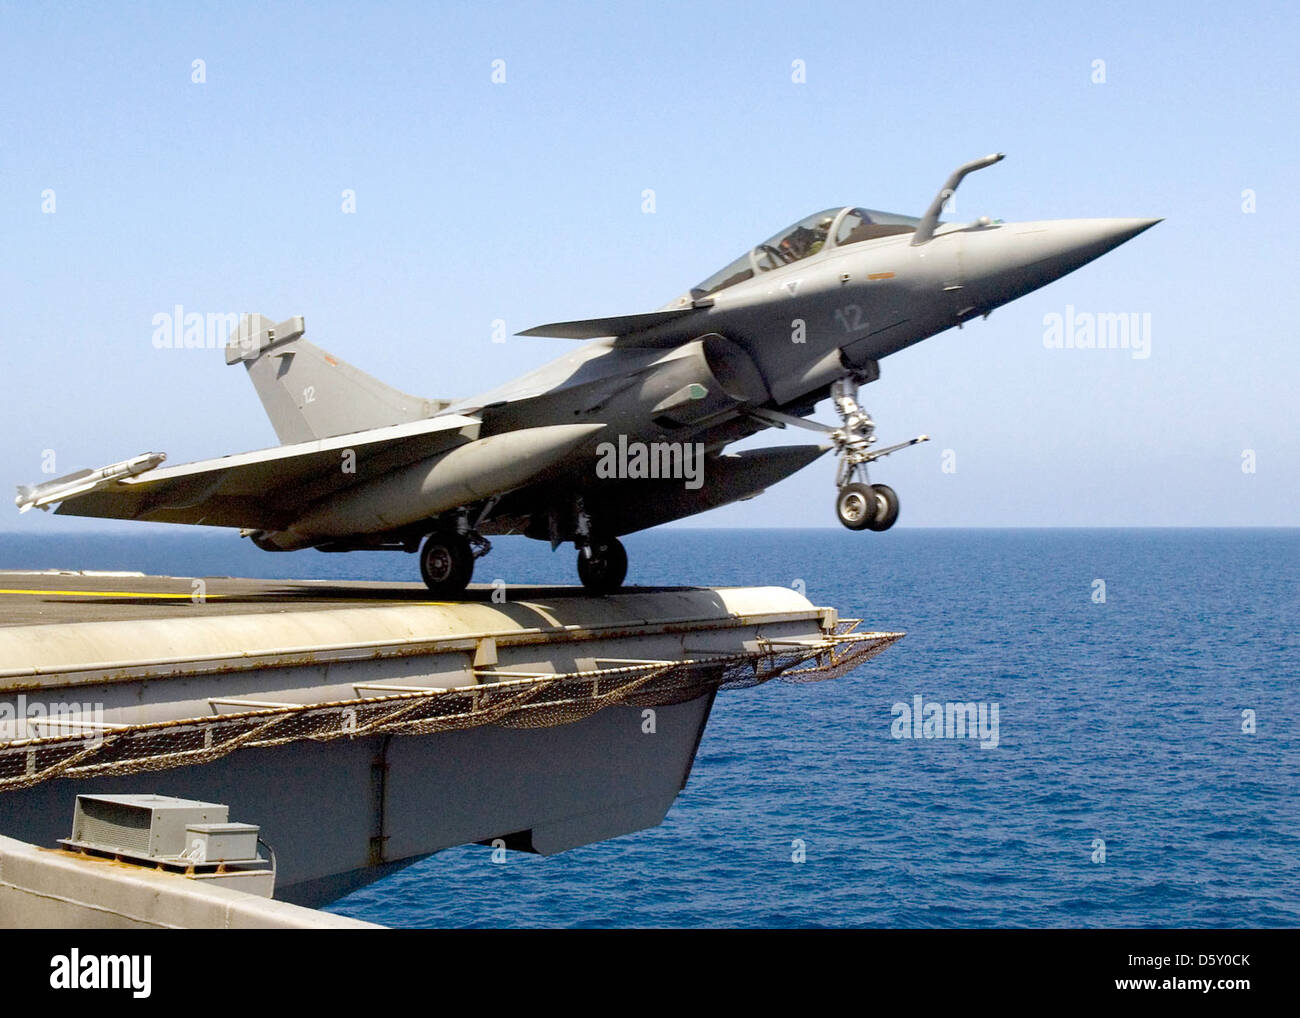 Mar Mediterráneo (julio 23, 2007) - Un franceses "Rafale m' aviones de combate realiza una catapulta ayudó a lanzar desde la cubierta de vuelo del de propulsión nuclear USS ENTERPRISE (CVN-65). Foto de stock